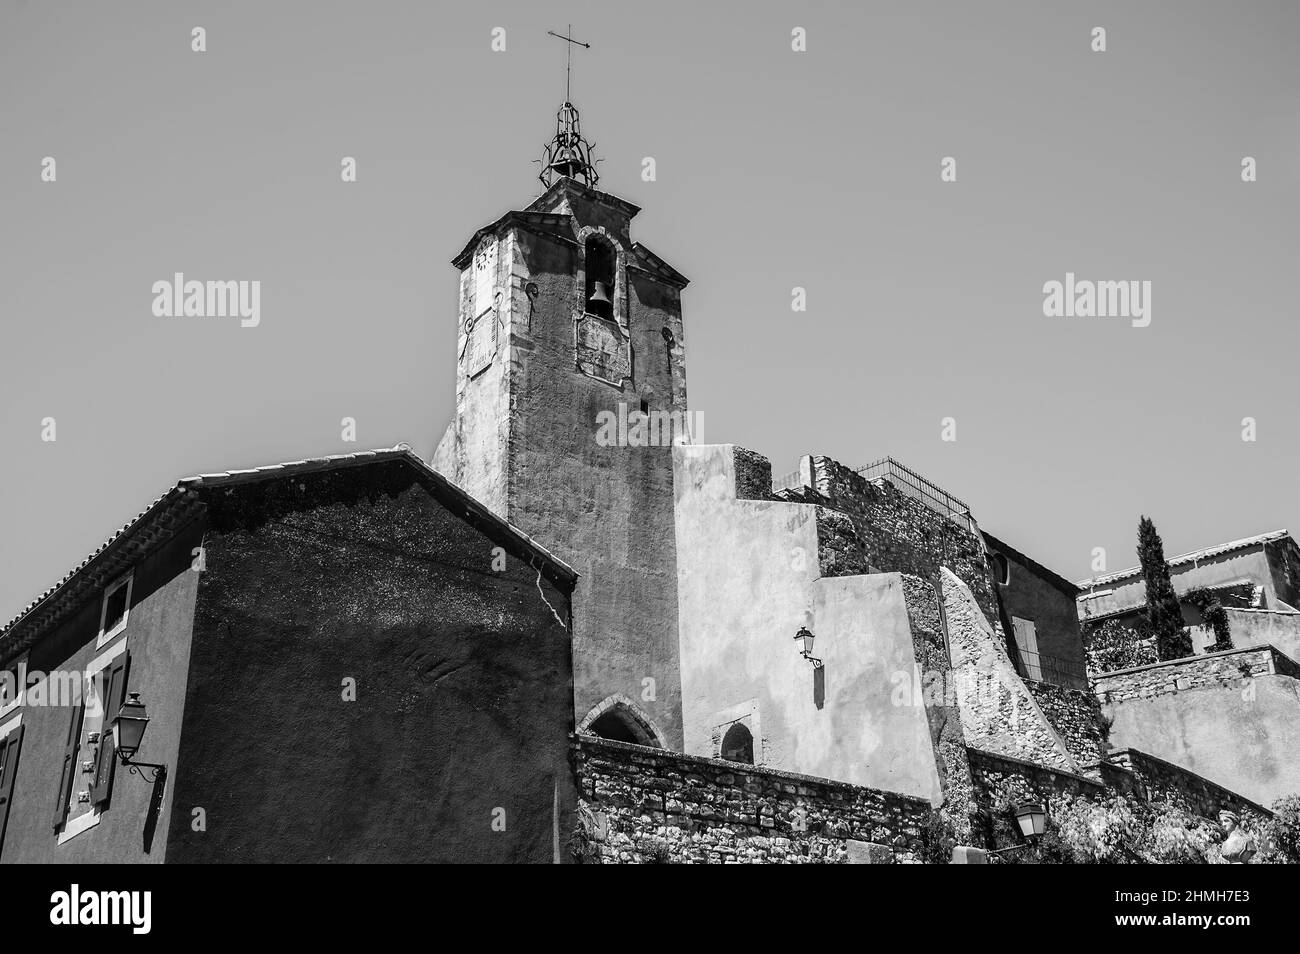 Roussillon ocre villaggio incluso nella lista dei 'più bei villaggi di Francia'. Provenza Alpi Costa Azzurra, Francia. Foto storica in bianco e nero Foto Stock